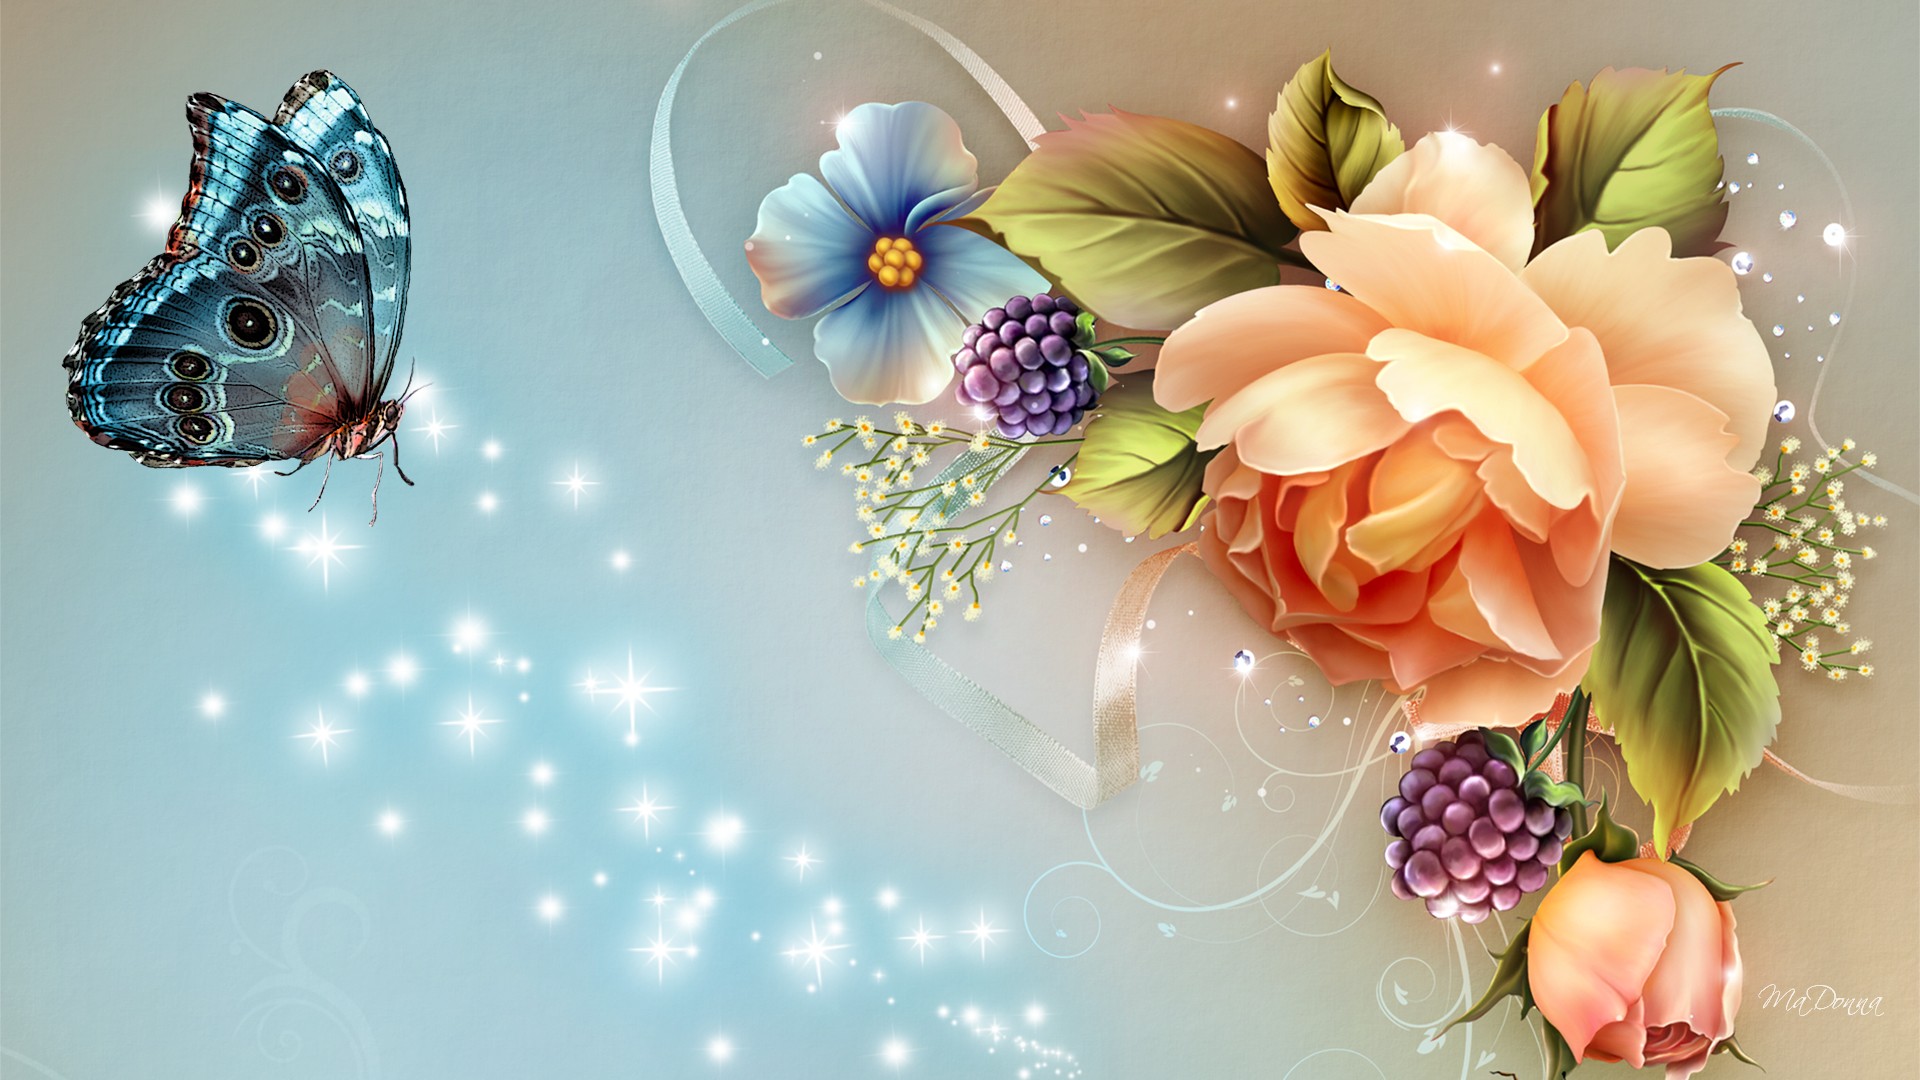 아름다운 hd 벽지 다운로드,꽃,식물,꽃 무늬 디자인,꽃잎,정물 사진